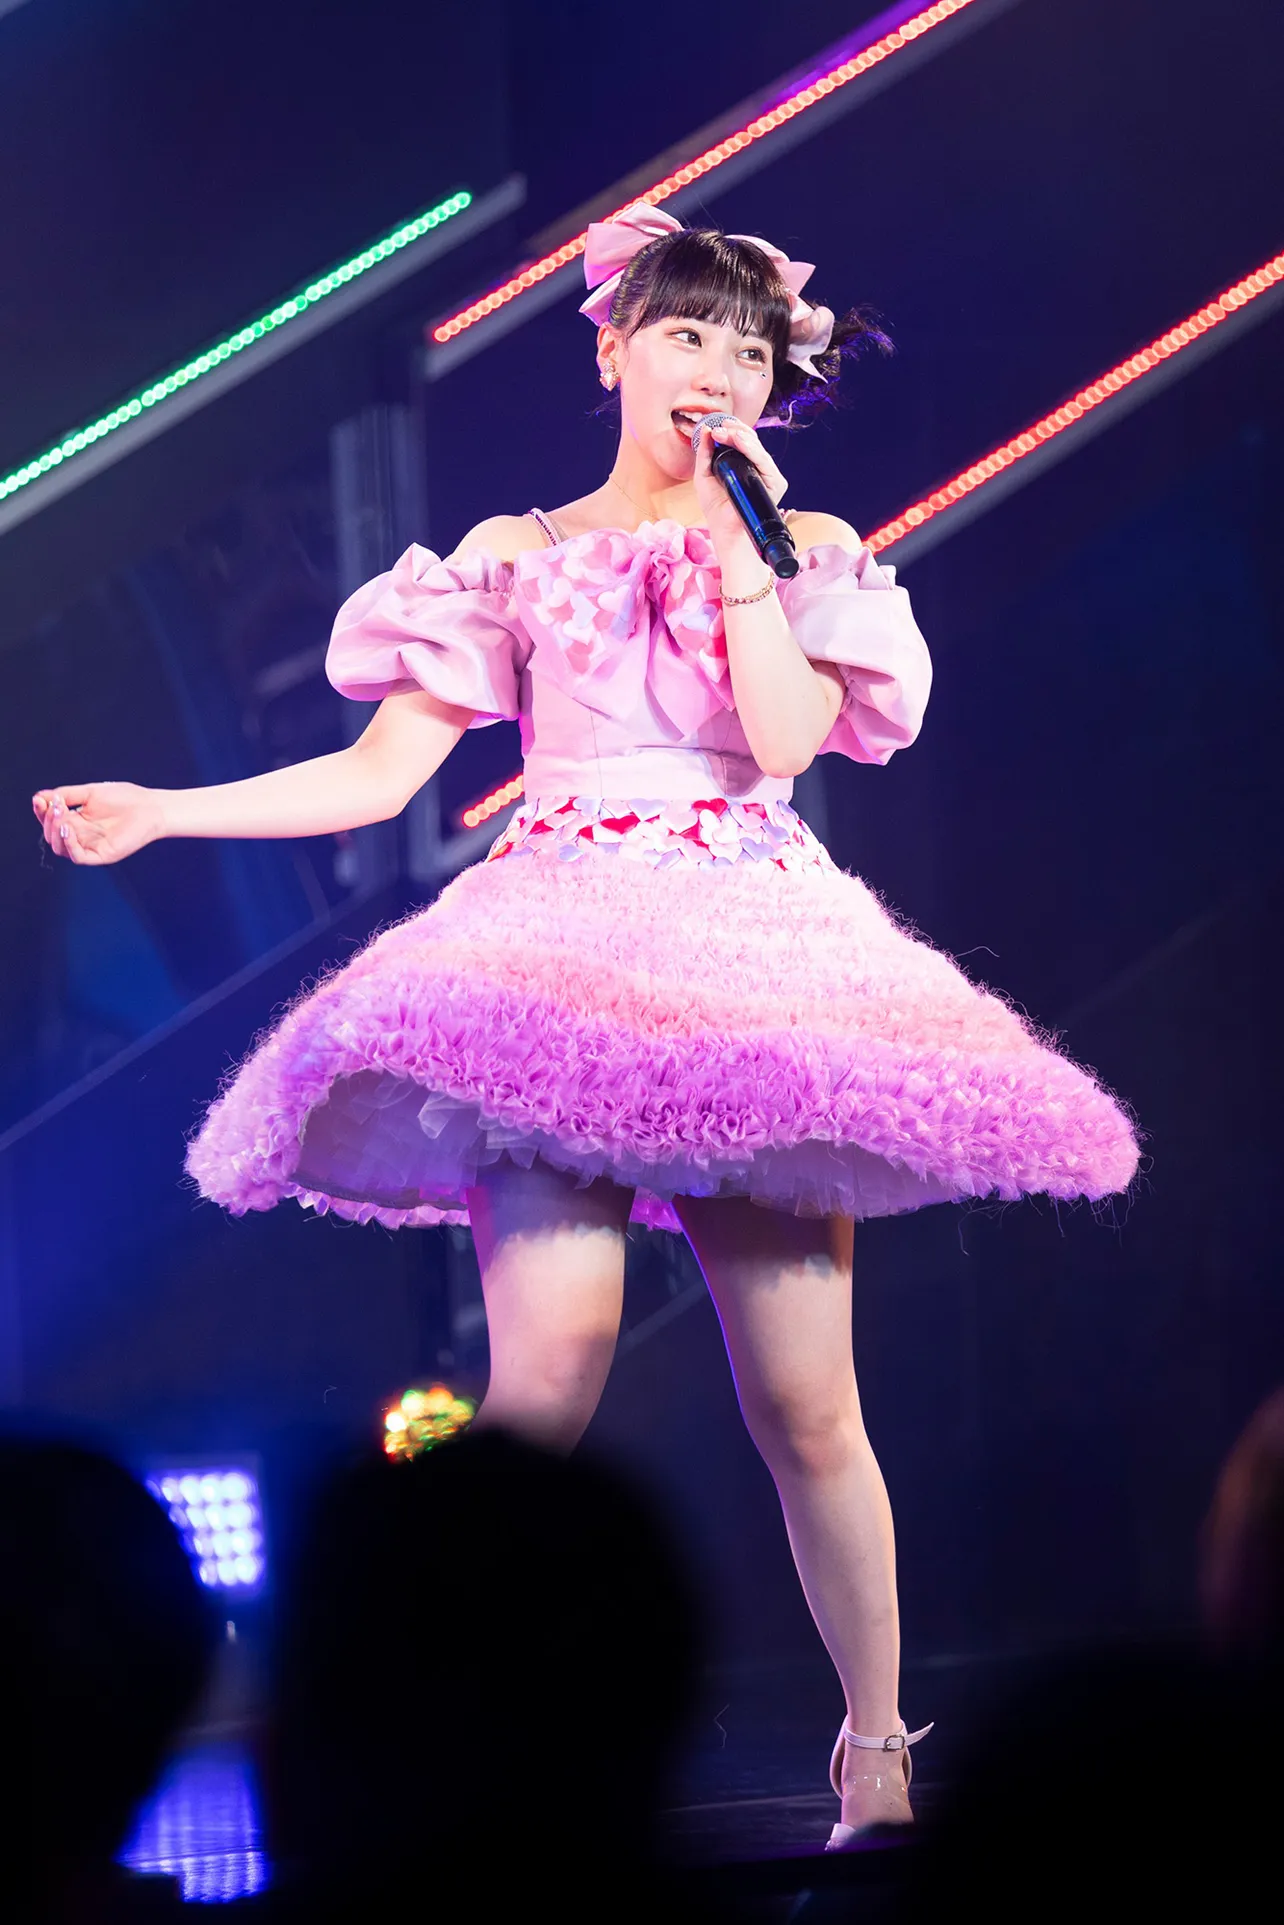 田中美久がピンクのミニドレス姿で「私だってアイドル」を歌う